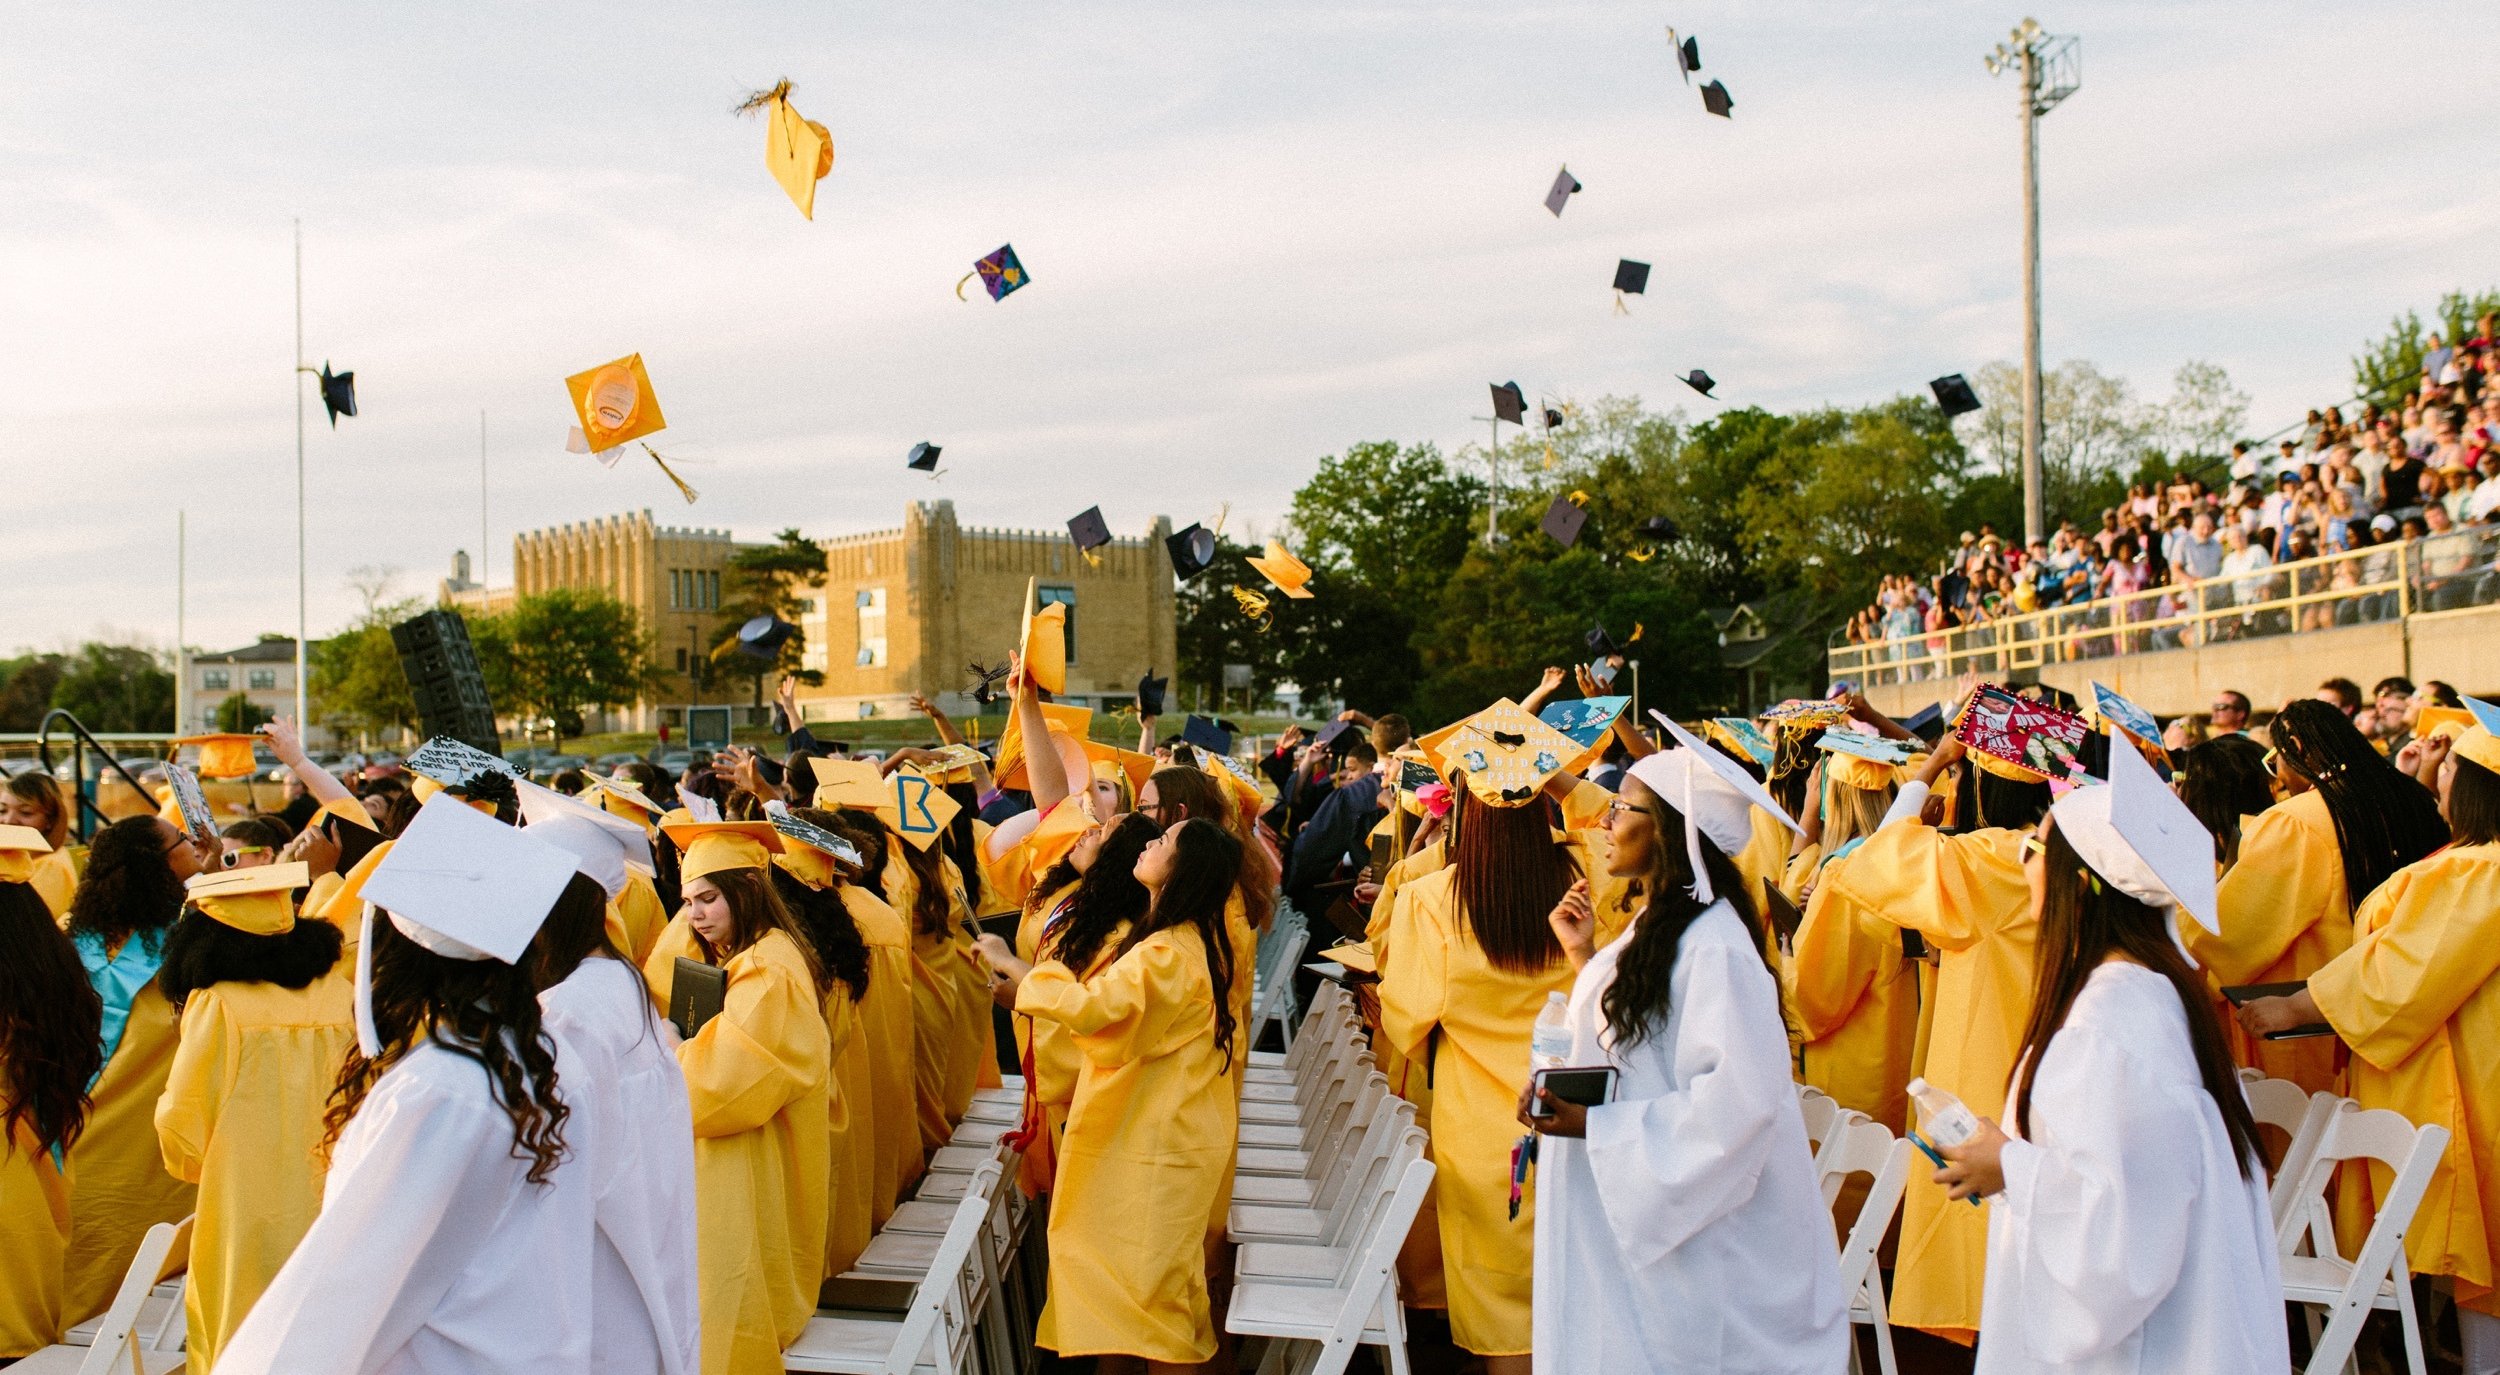 Ceremonia de graduación con estudiantes vestidos con toga y birrete amarillo y blanco, lanzando birretes al aire en señal de celebración.